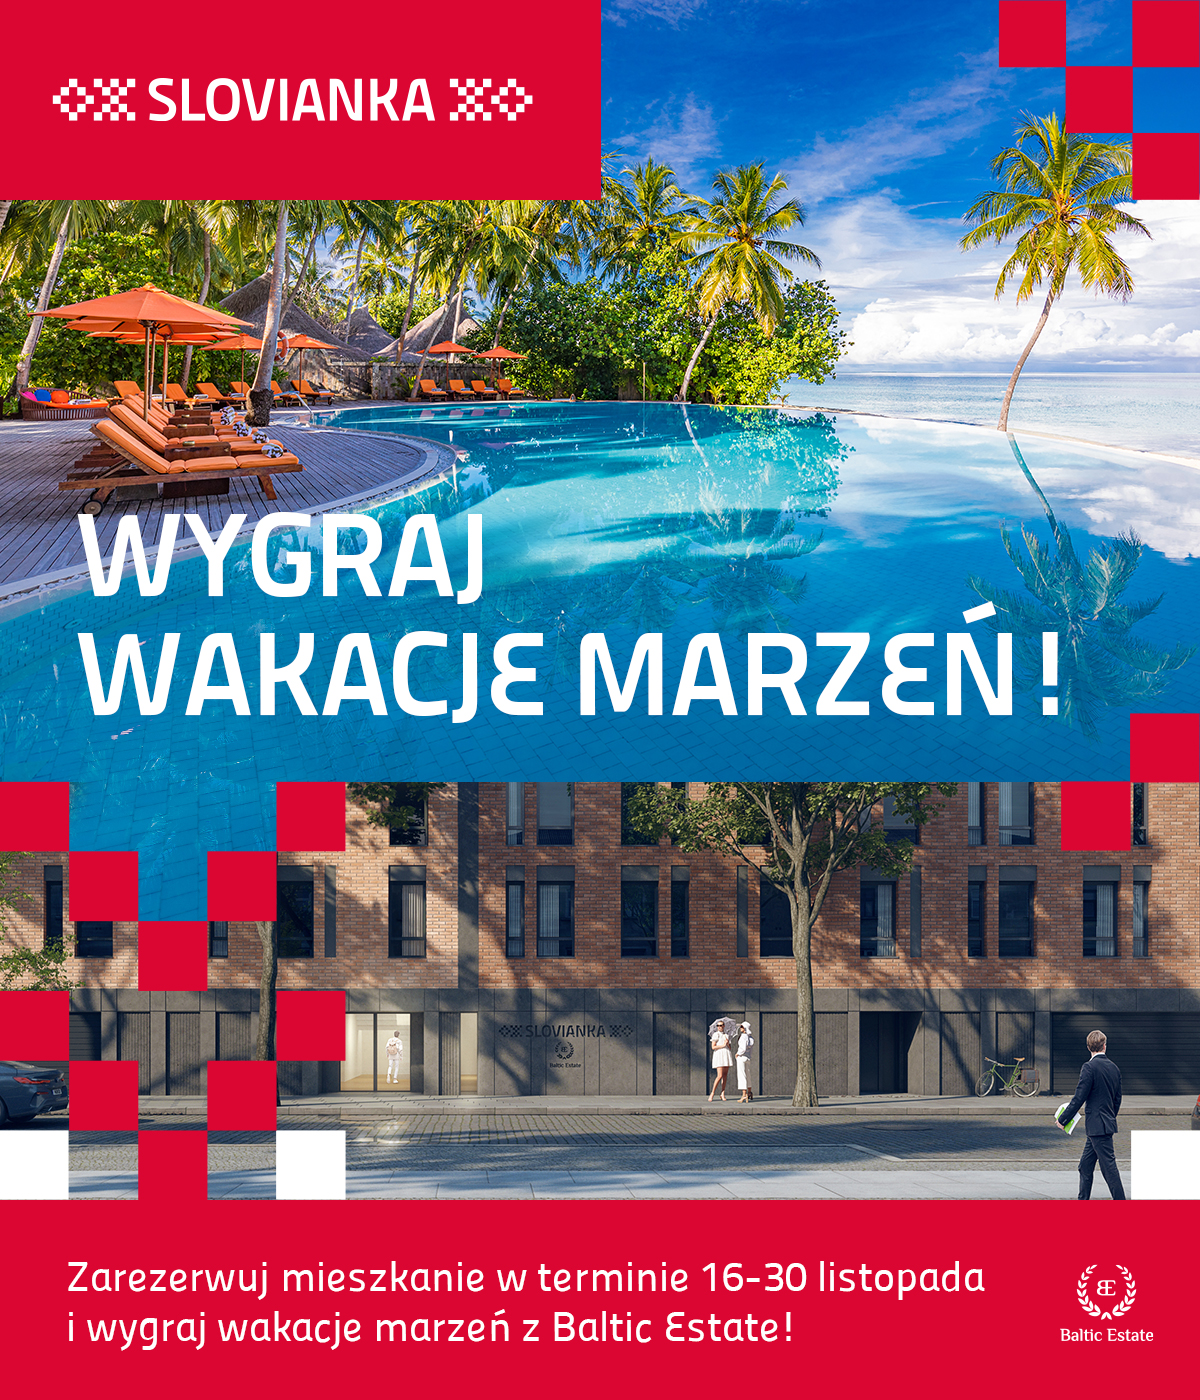 SLOVIANKA_Voucher-wygraj-wakacje-marzen_haslo_01